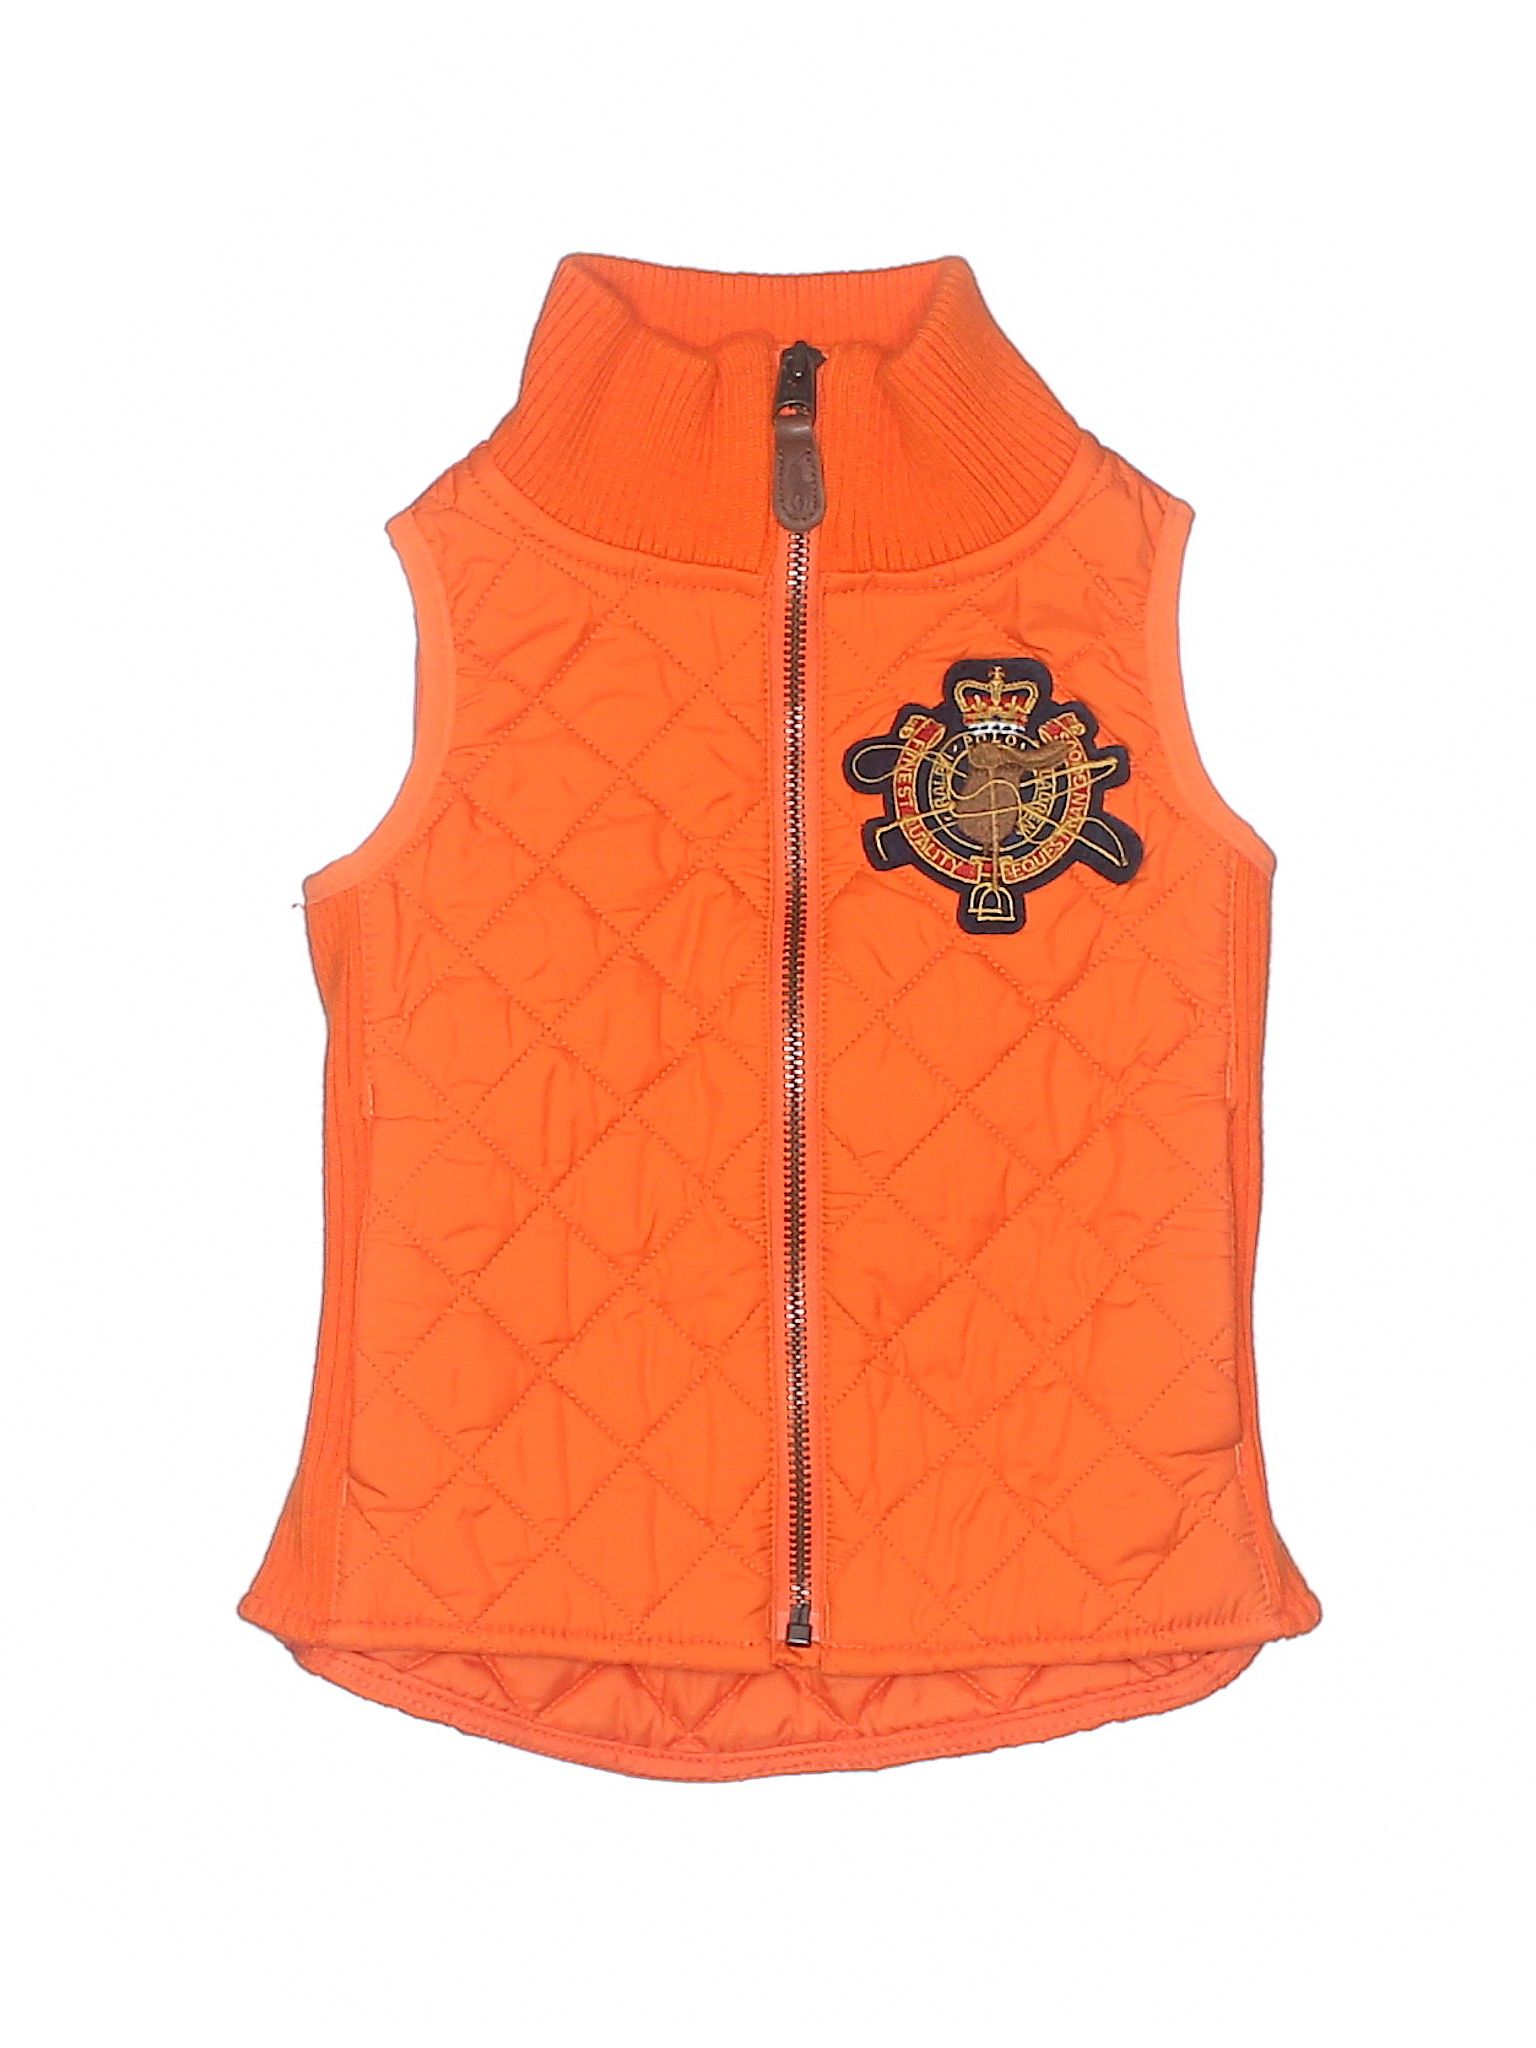 Ralph Lauren Vest Size 3: Orange Boys Jackets & Outerwear - 53952648 | thredUP